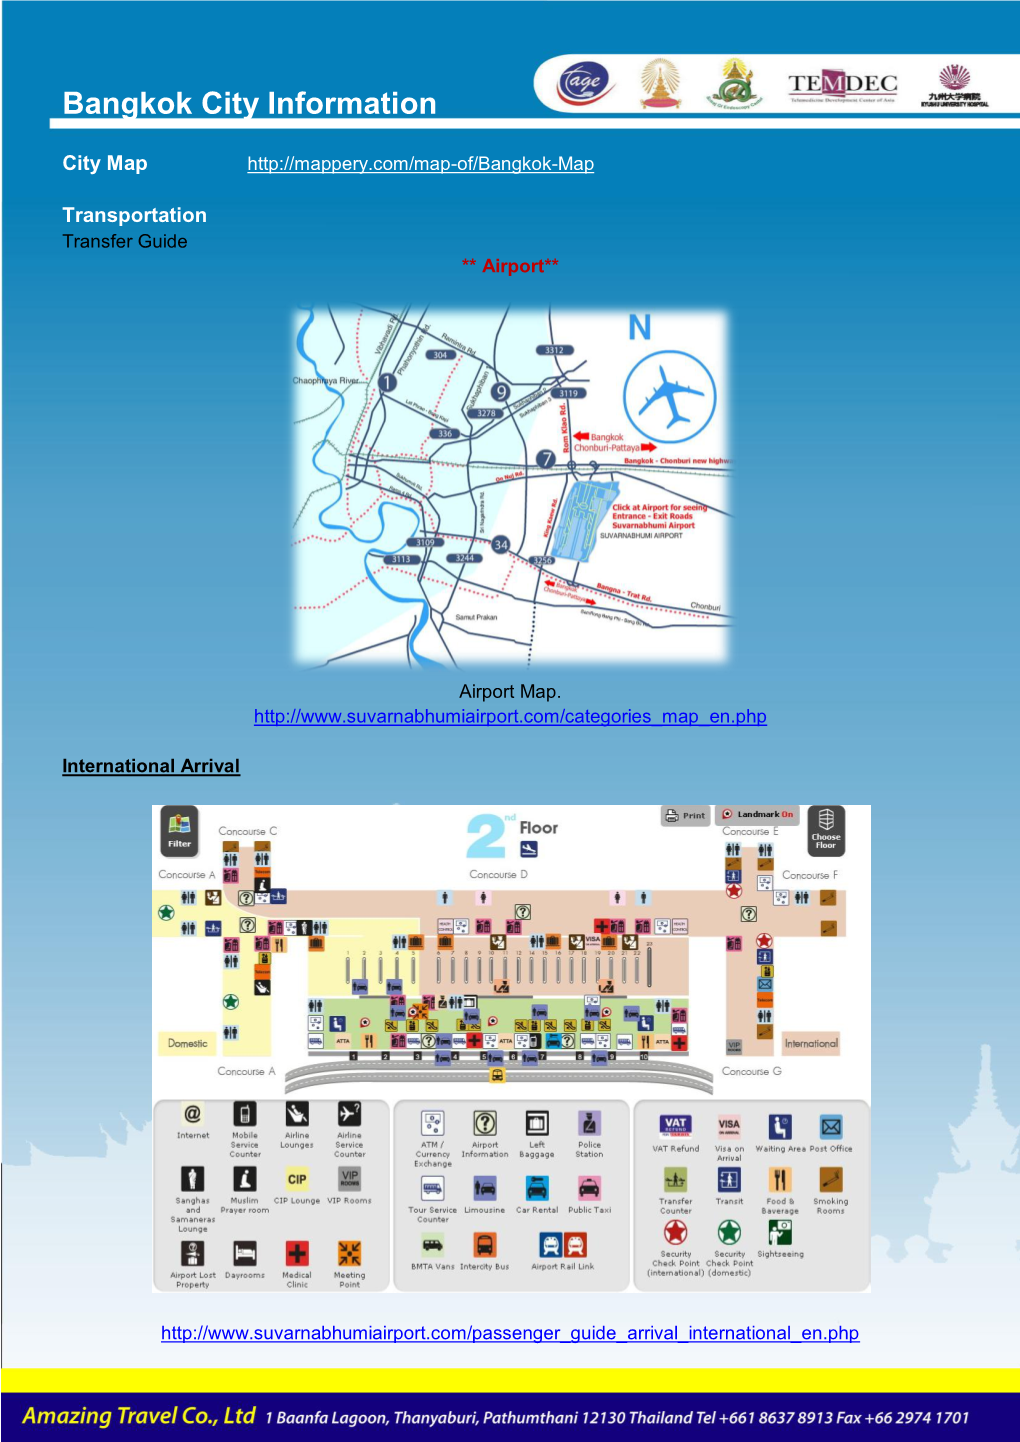 Bangkok City Information